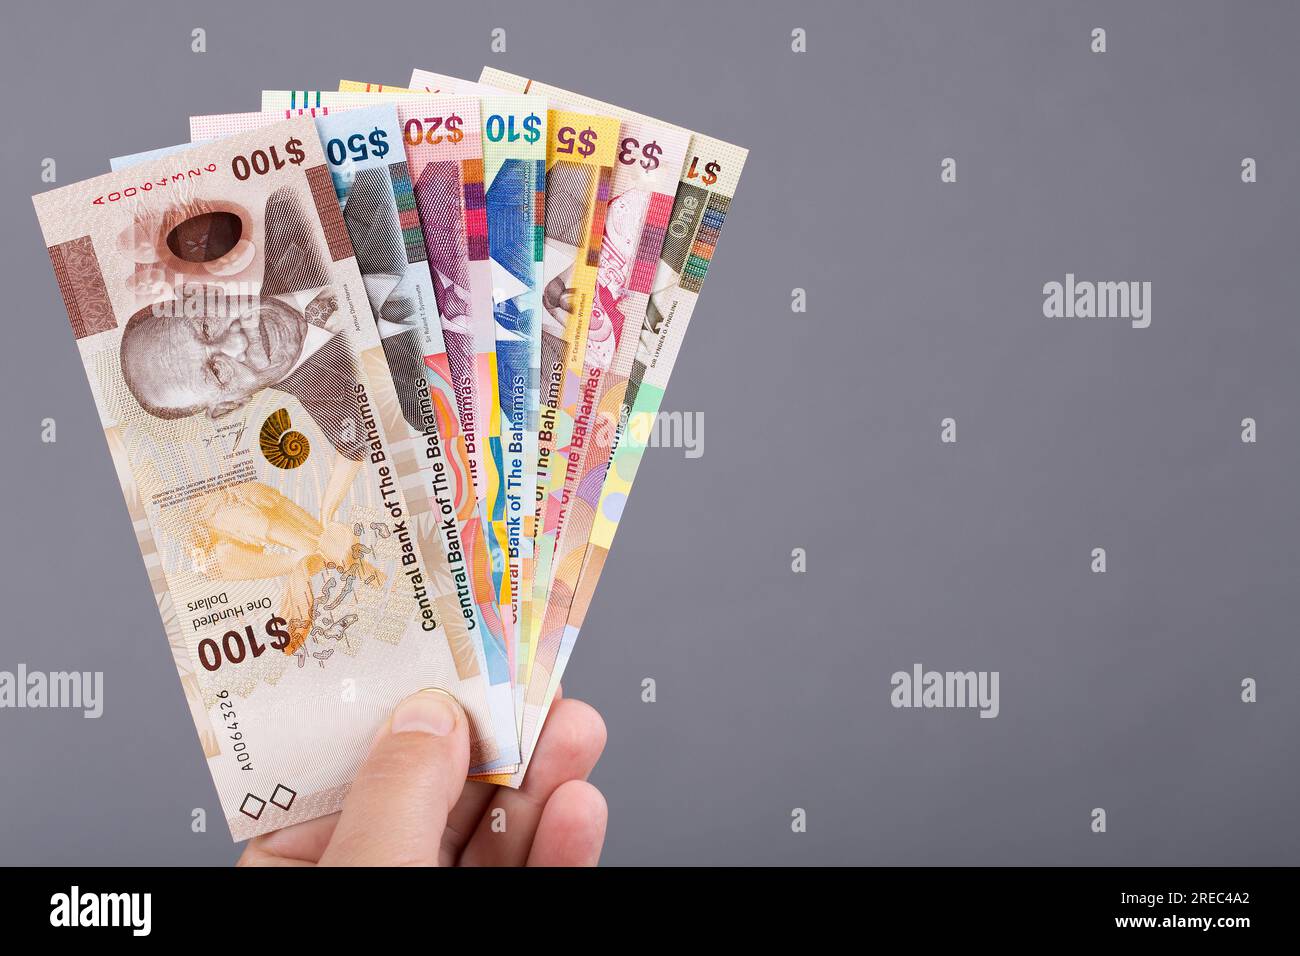 Argent bahamien - dollar dans la main sur un fond gris Banque D'Images